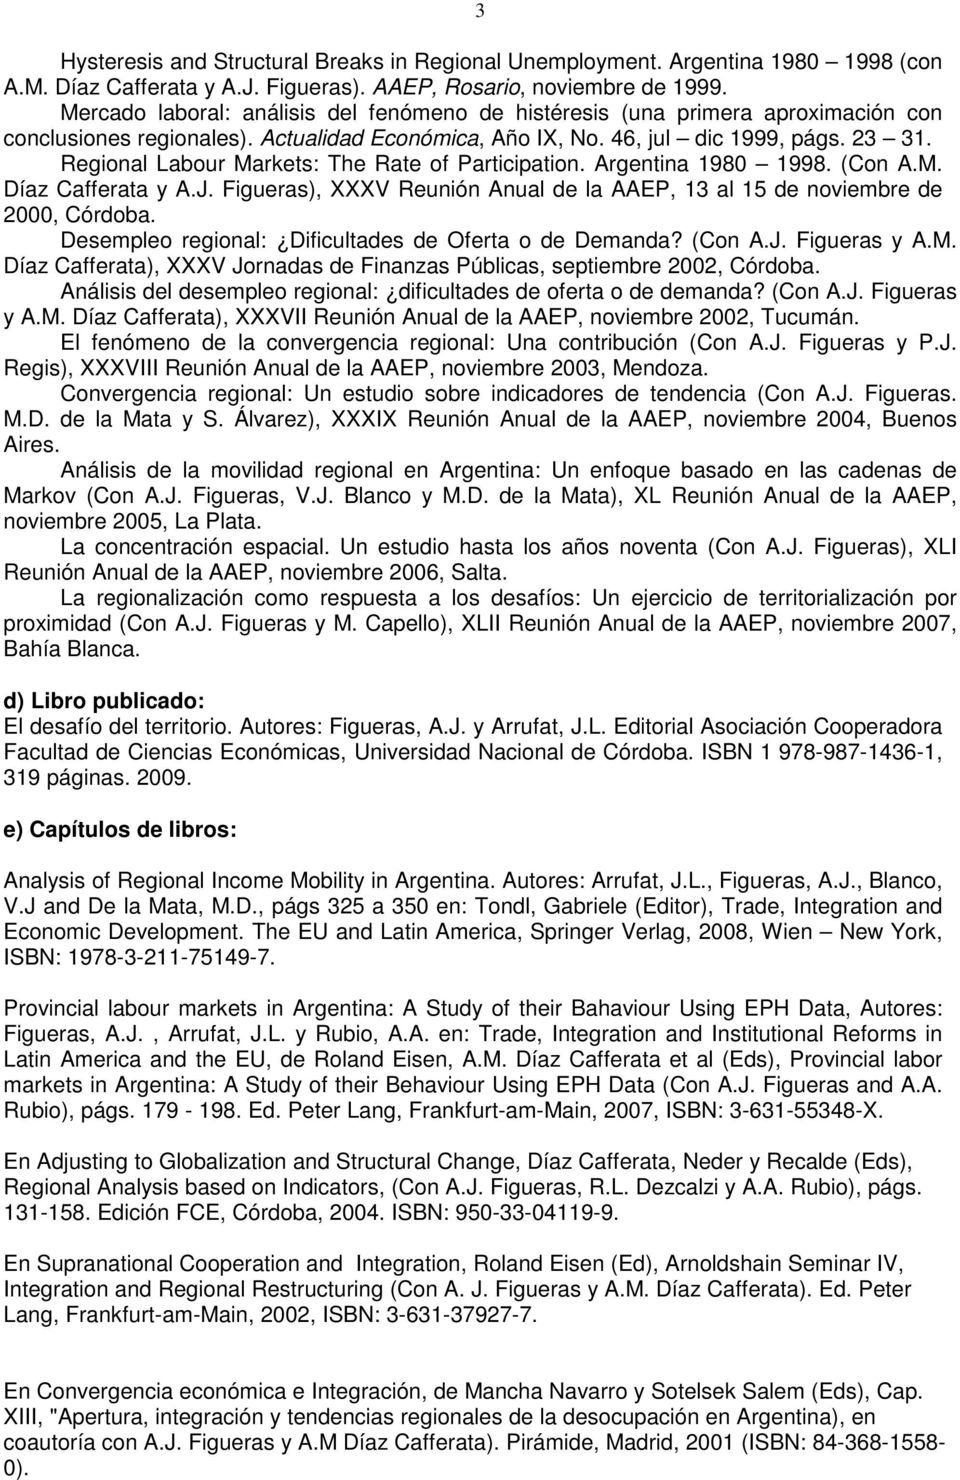 (Con AM Díaz Cafferata y AJ Figueras), XXXV Reunión Anual de la AAEP, 13 al 15 de noviembre de 2000, Córdoba Desempleo regional: Dificultades de Oferta o de Demanda?